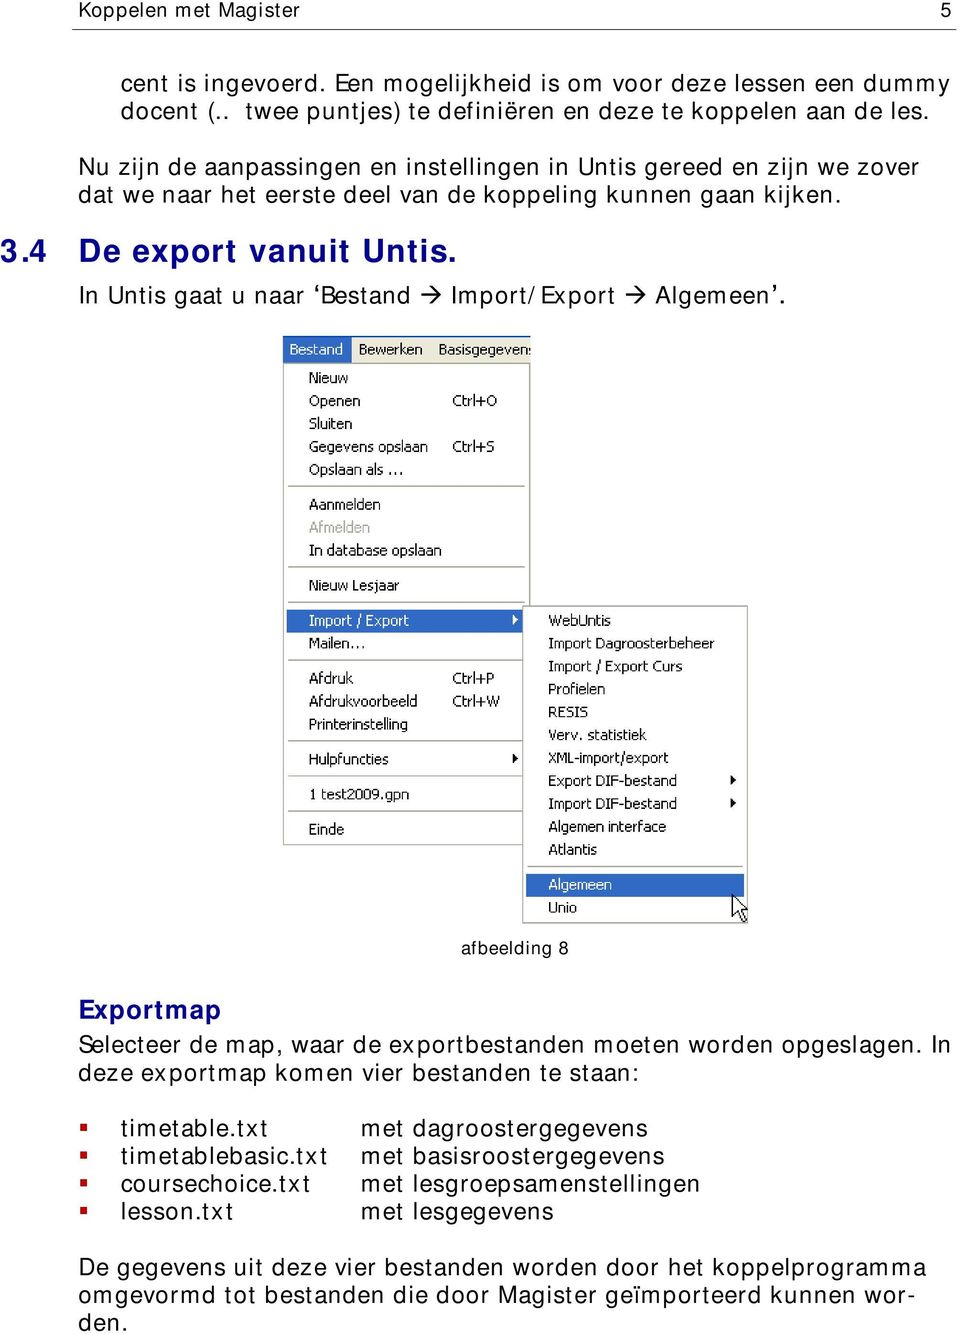 In Untis gaat u naar Bestand Import/Export Algemeen afbeelding 8 Exportmap Selecteer de map, waar de exportbestanden moeten worden opgeslagen.